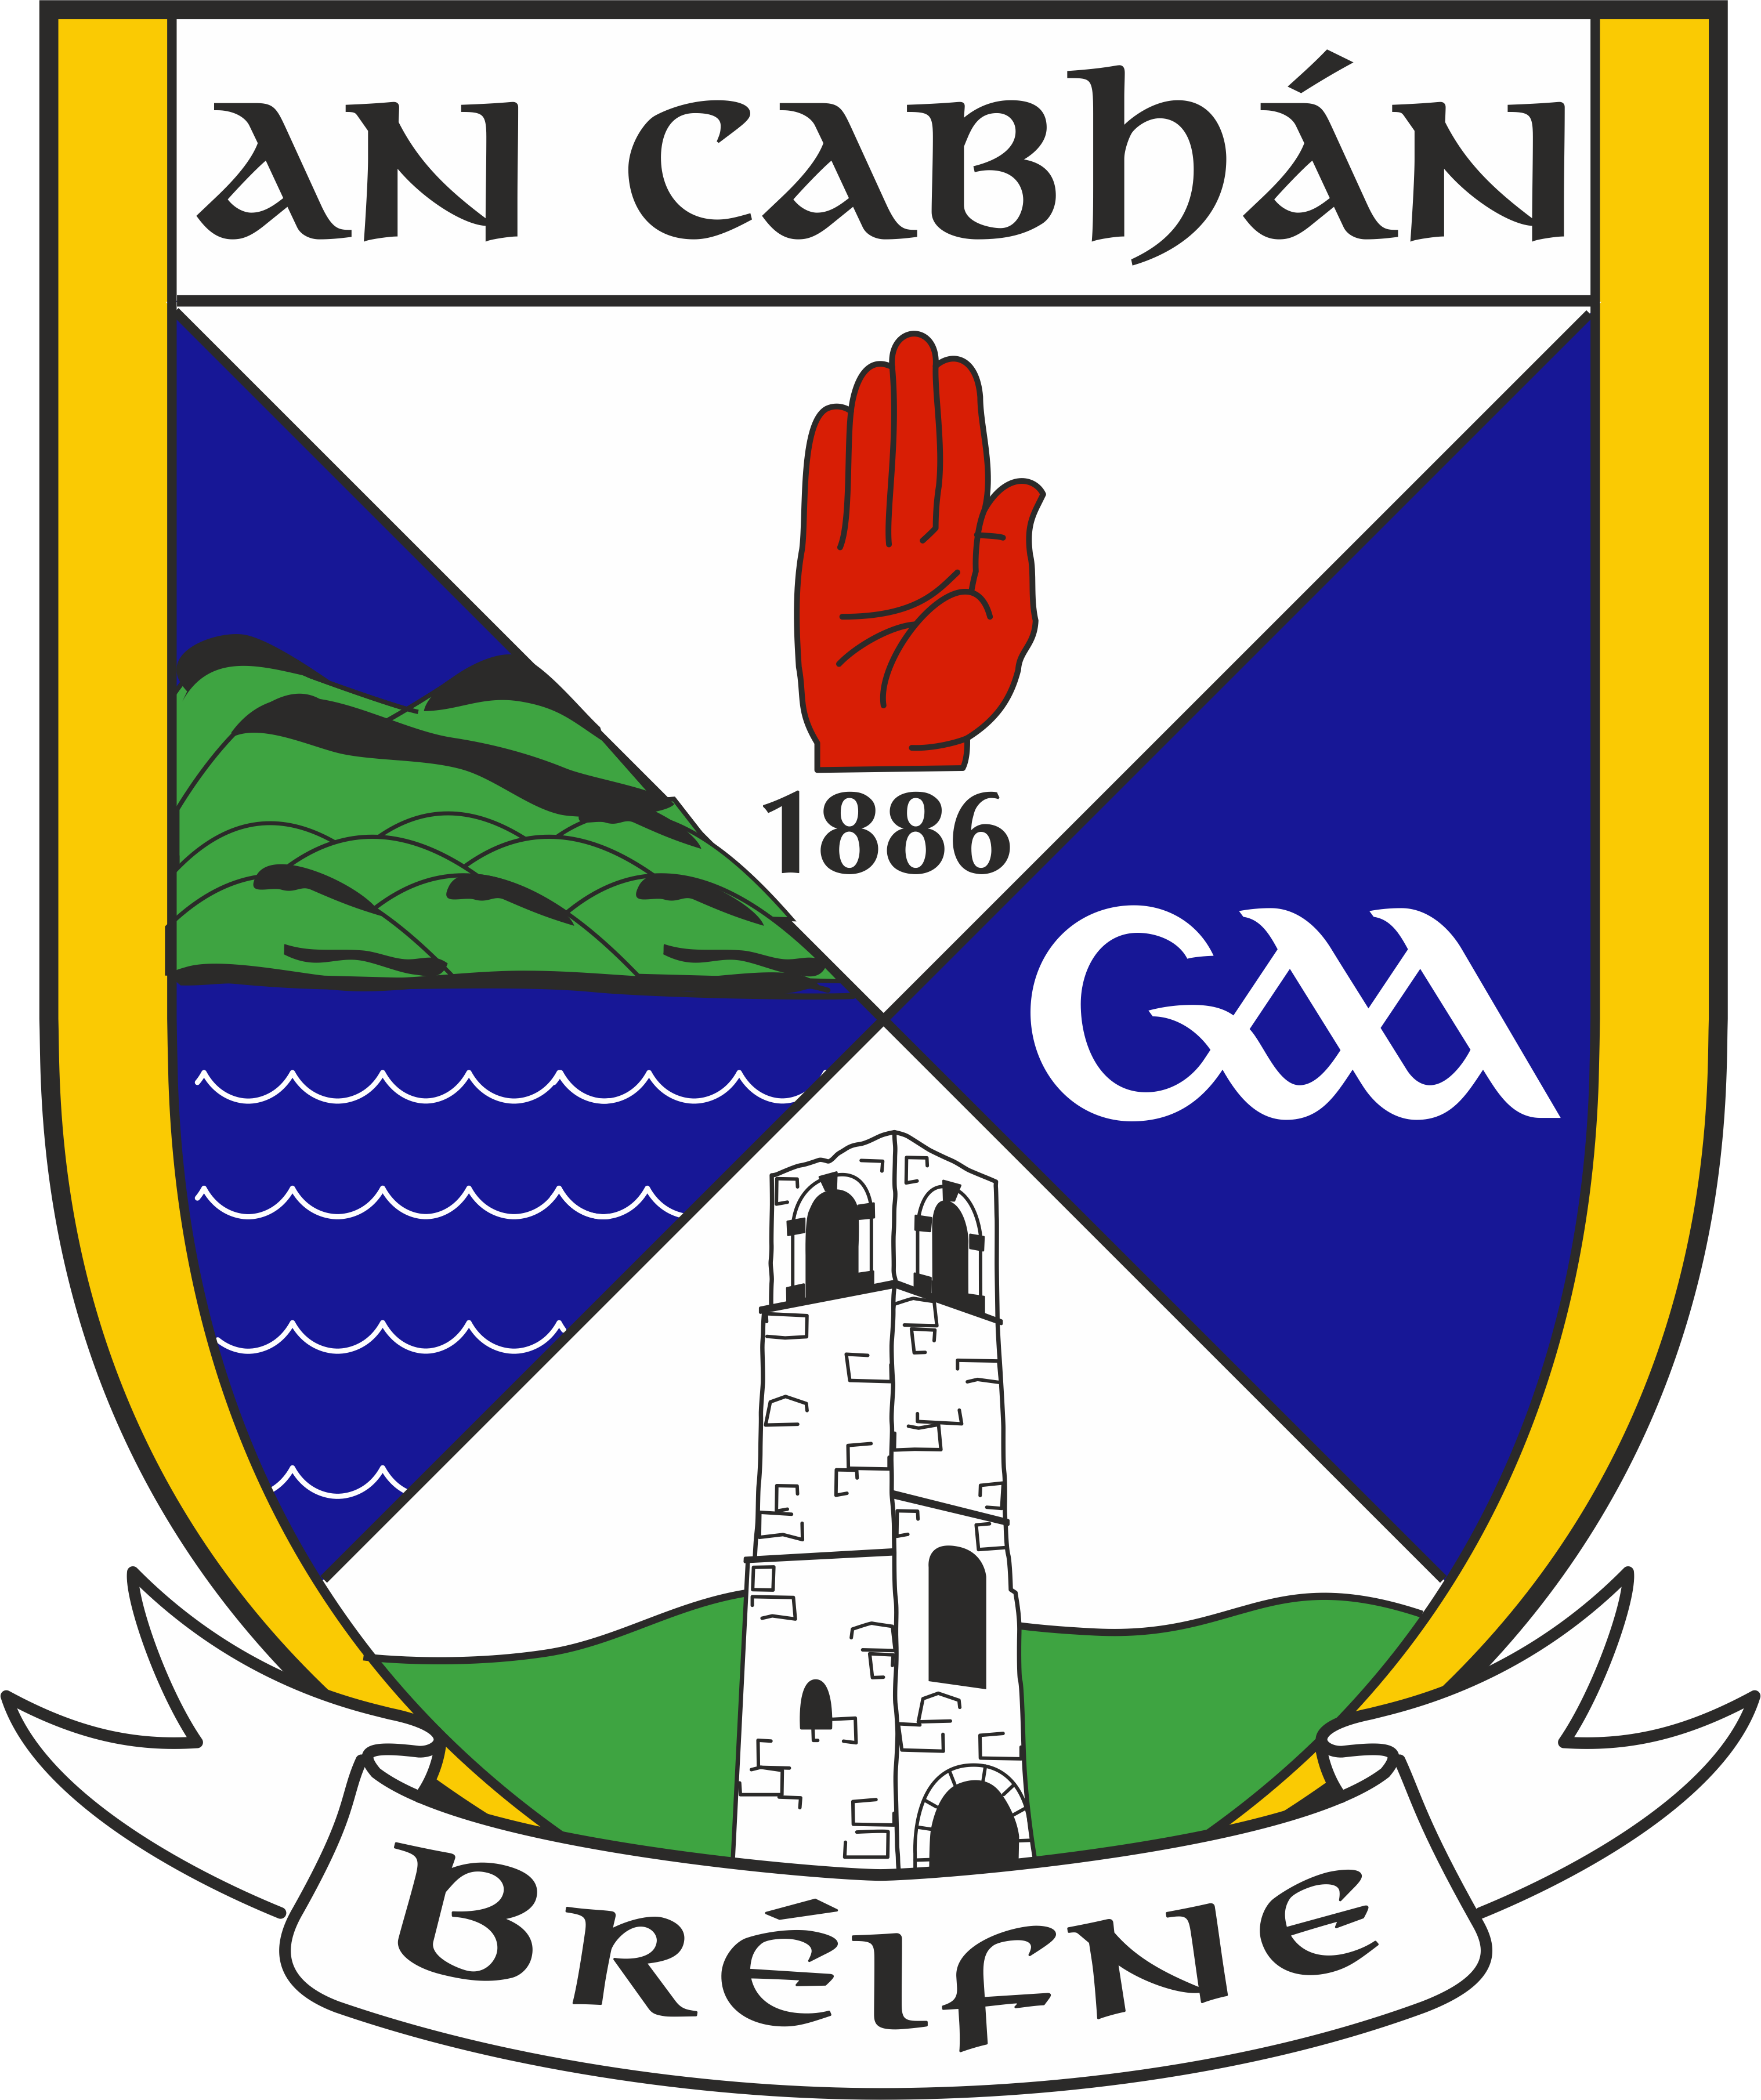 Cavan Gaels GAA